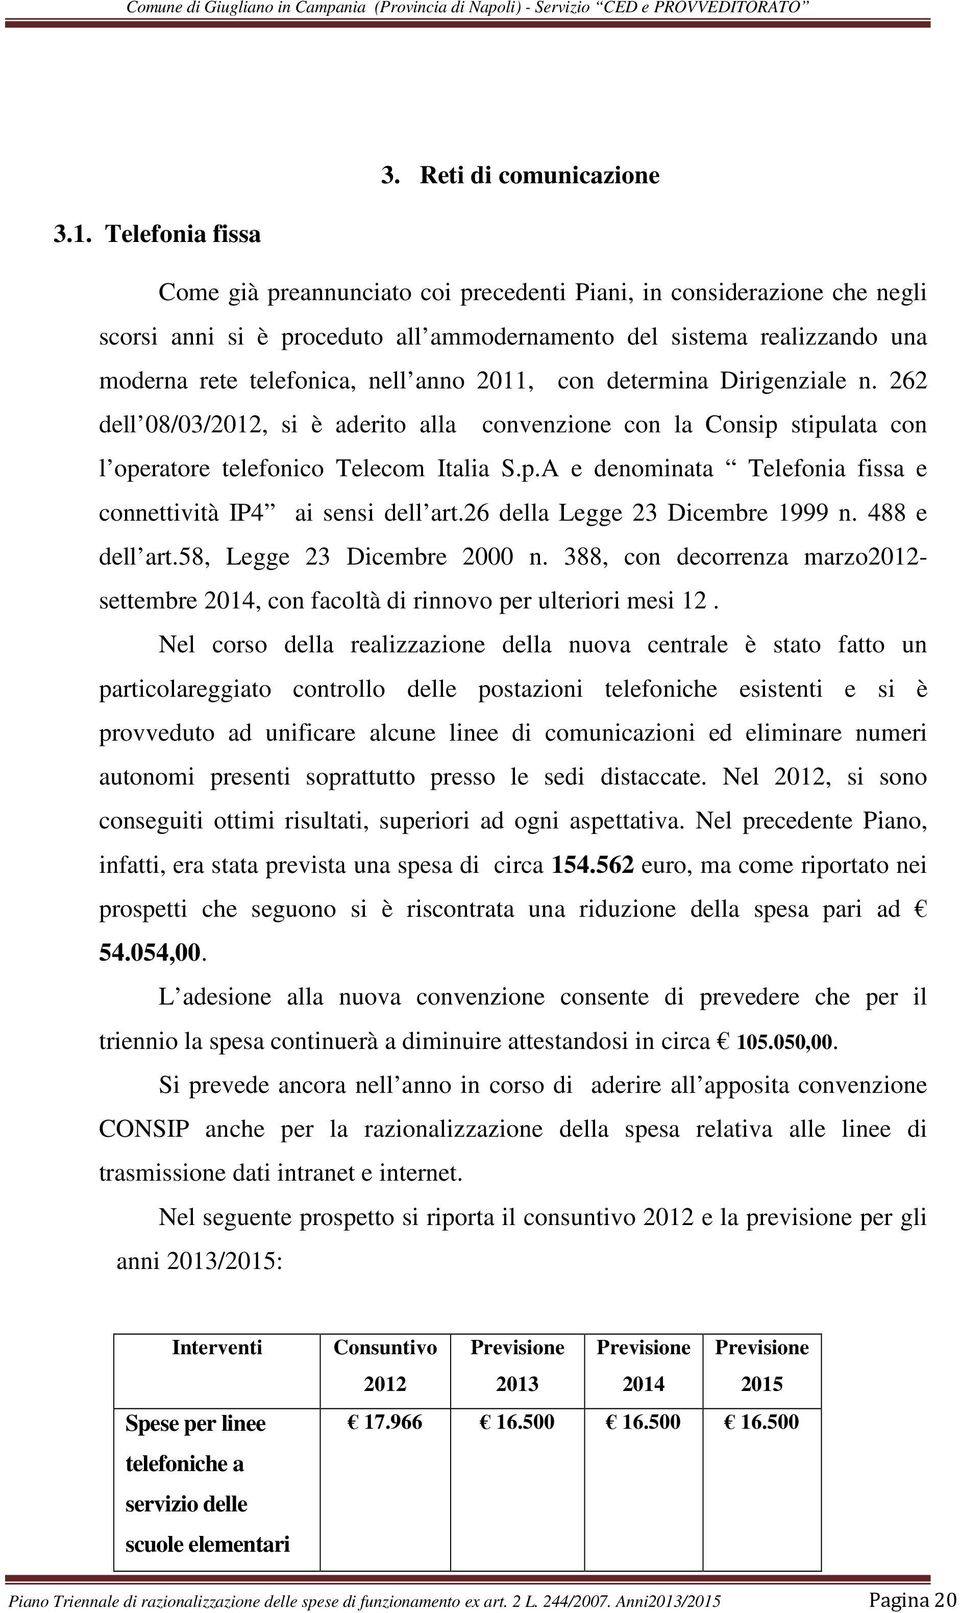 2011, con determina Dirigenziale n. 262 dell 08/03/2012, si è aderito alla convenzione con la Consip stipulata con l operatore telefonico Telecom Italia S.p.A e denominata Telefonia fissa e connettività IP4 ai sensi dell art.